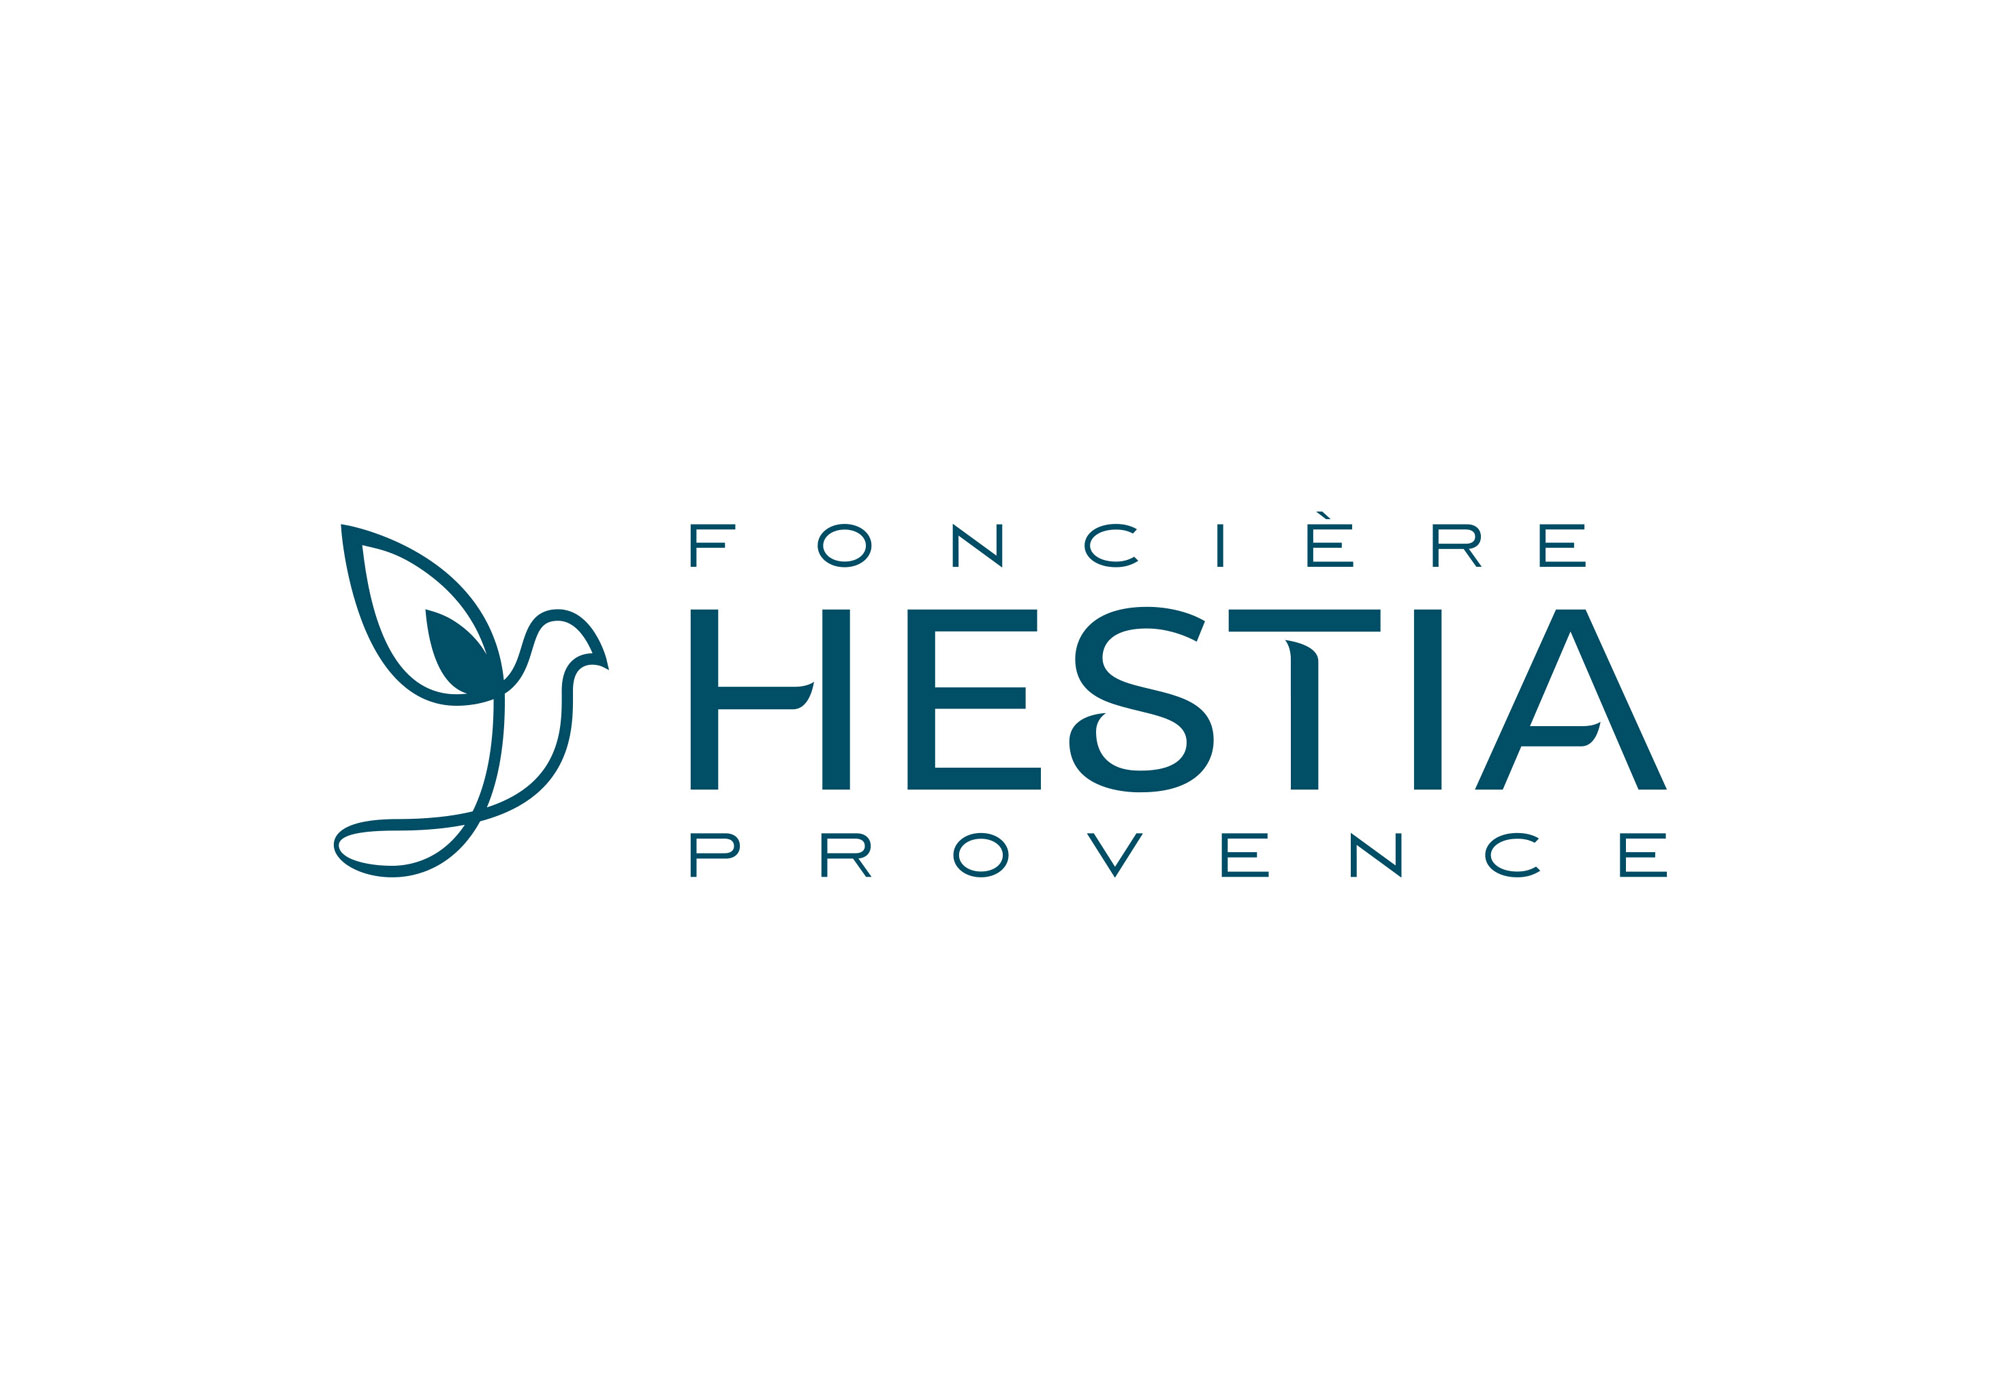 Identité visuelle Foncière Hestia Provence